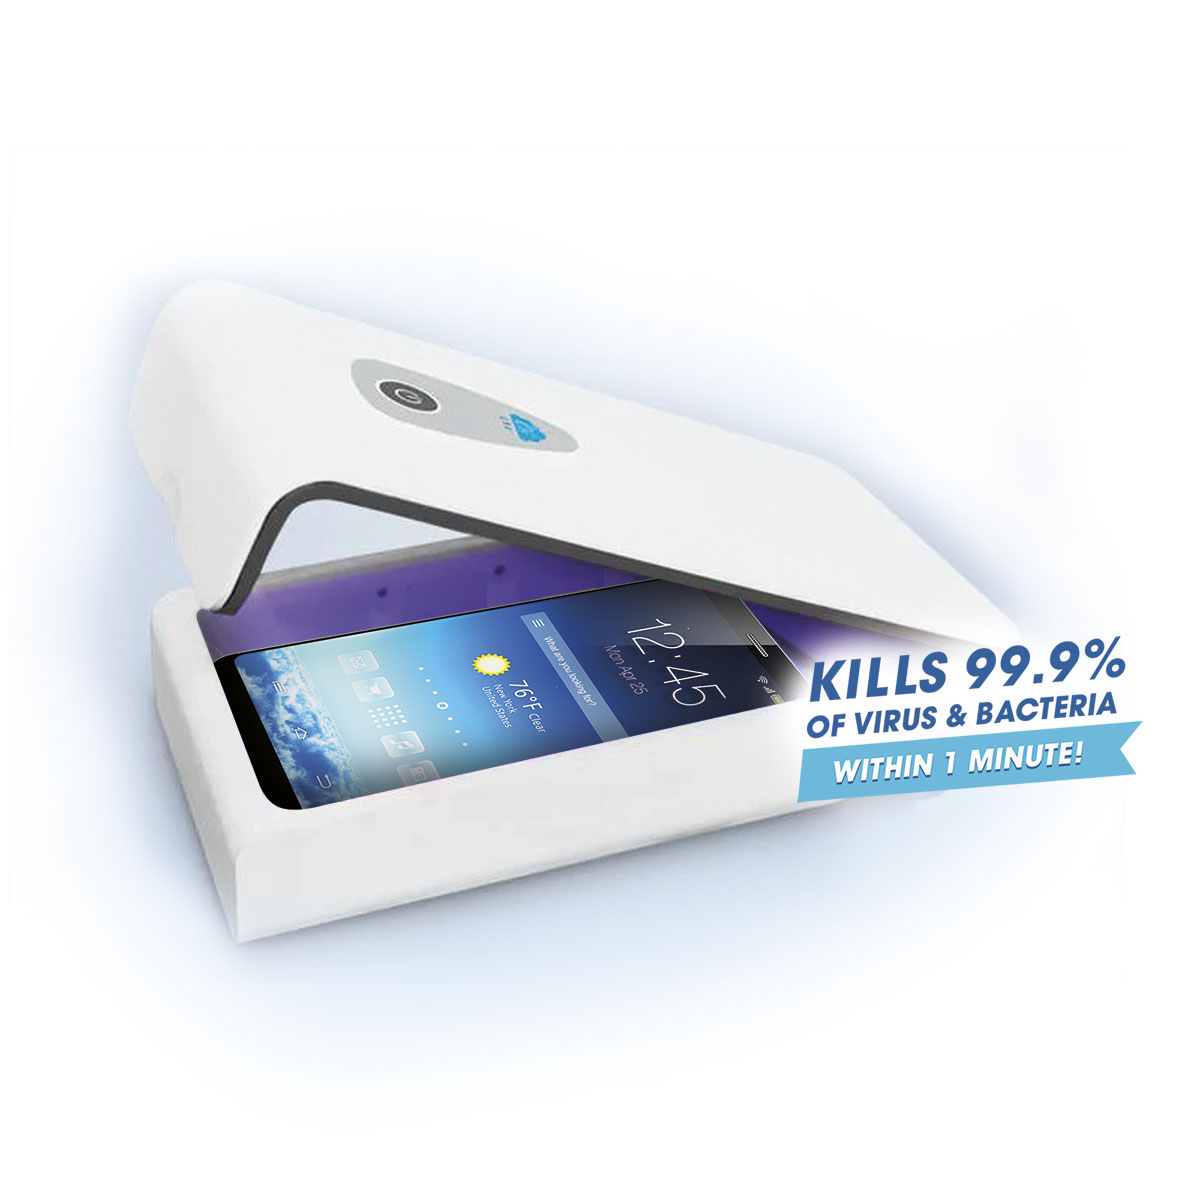 Smartphone-Desinfektion in nur einer Minute - Easypix Healthcare Devices stellt wieder aufladbare UV-C-Desinfektionsbox „SteriBox SB1“ vor